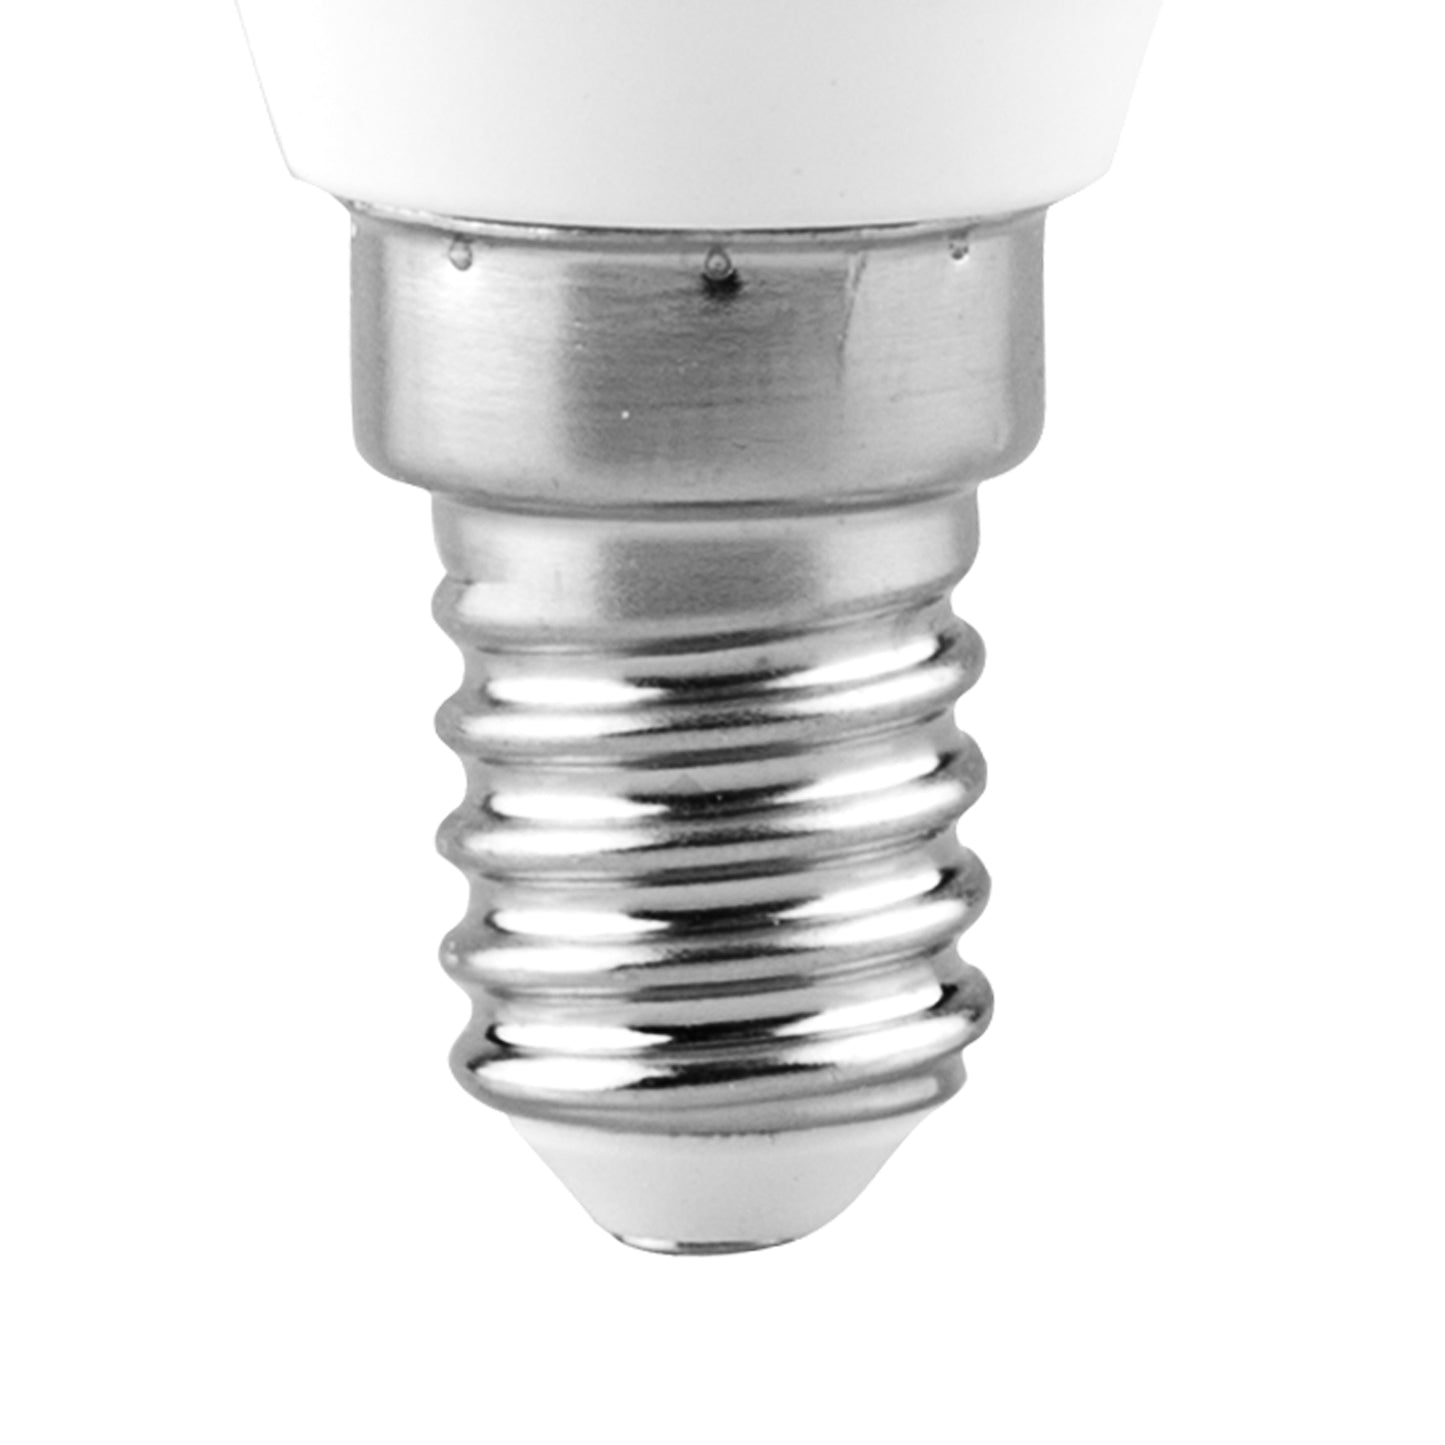 LAMPE REFLECTEUR LED SAMSUNG E14 R50 6W